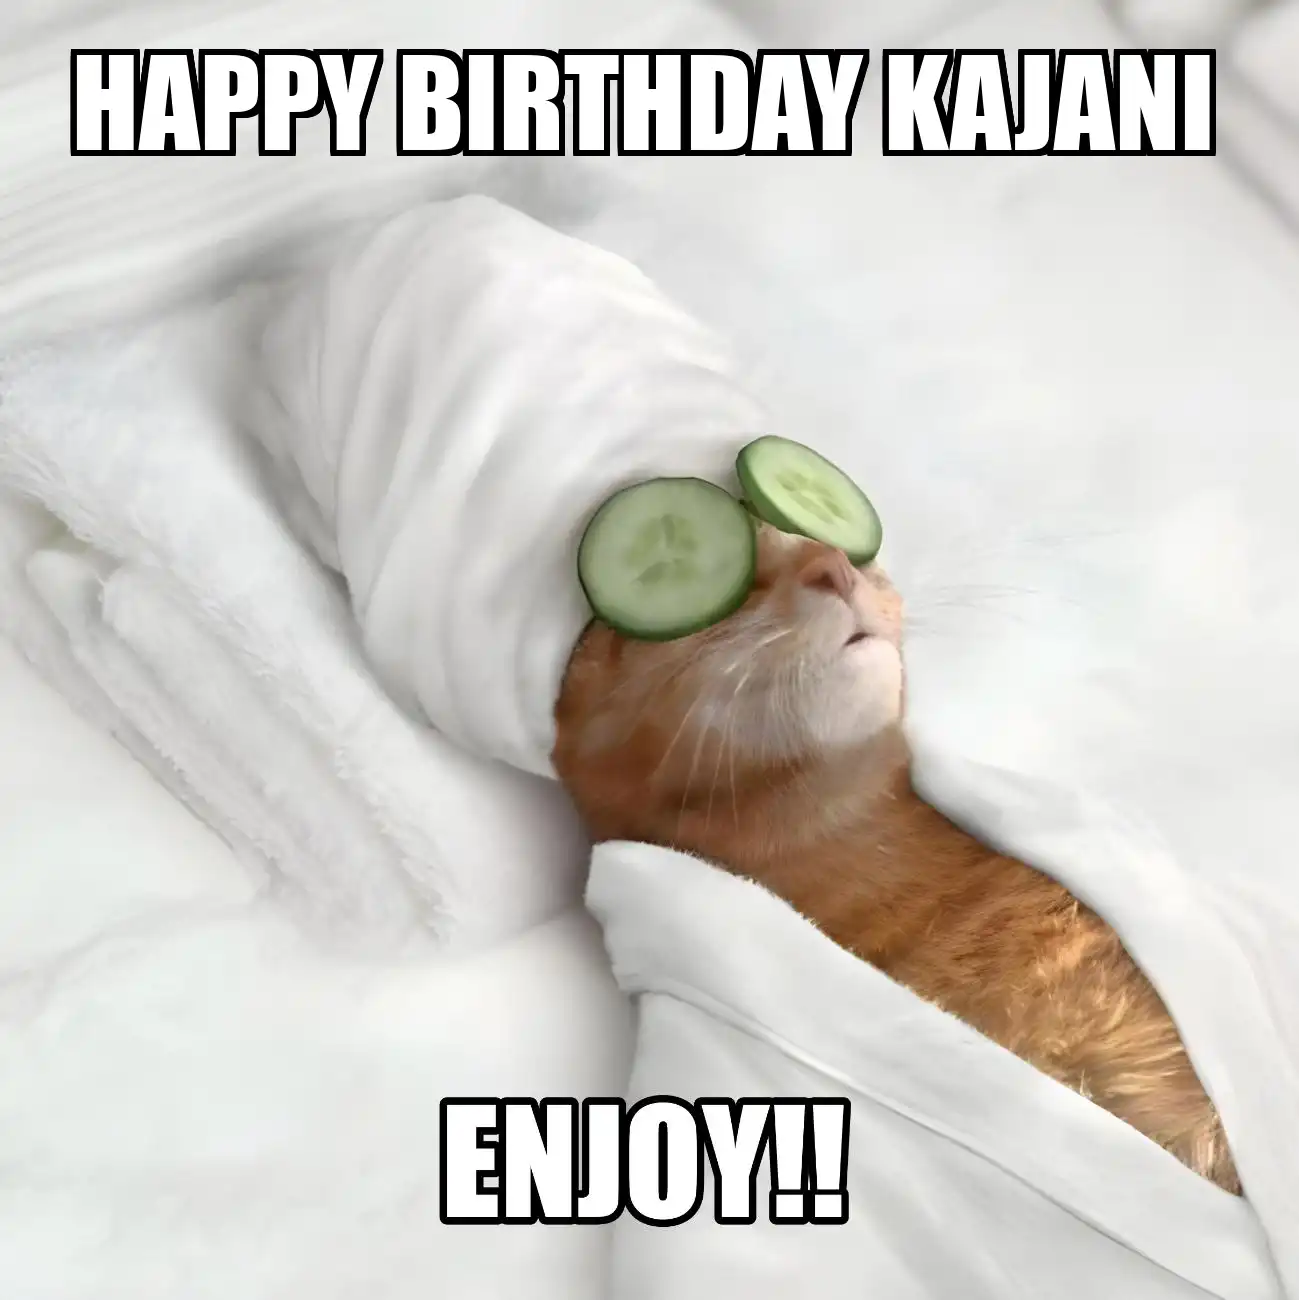 Happy Birthday Kajani Enjoy Cat Meme